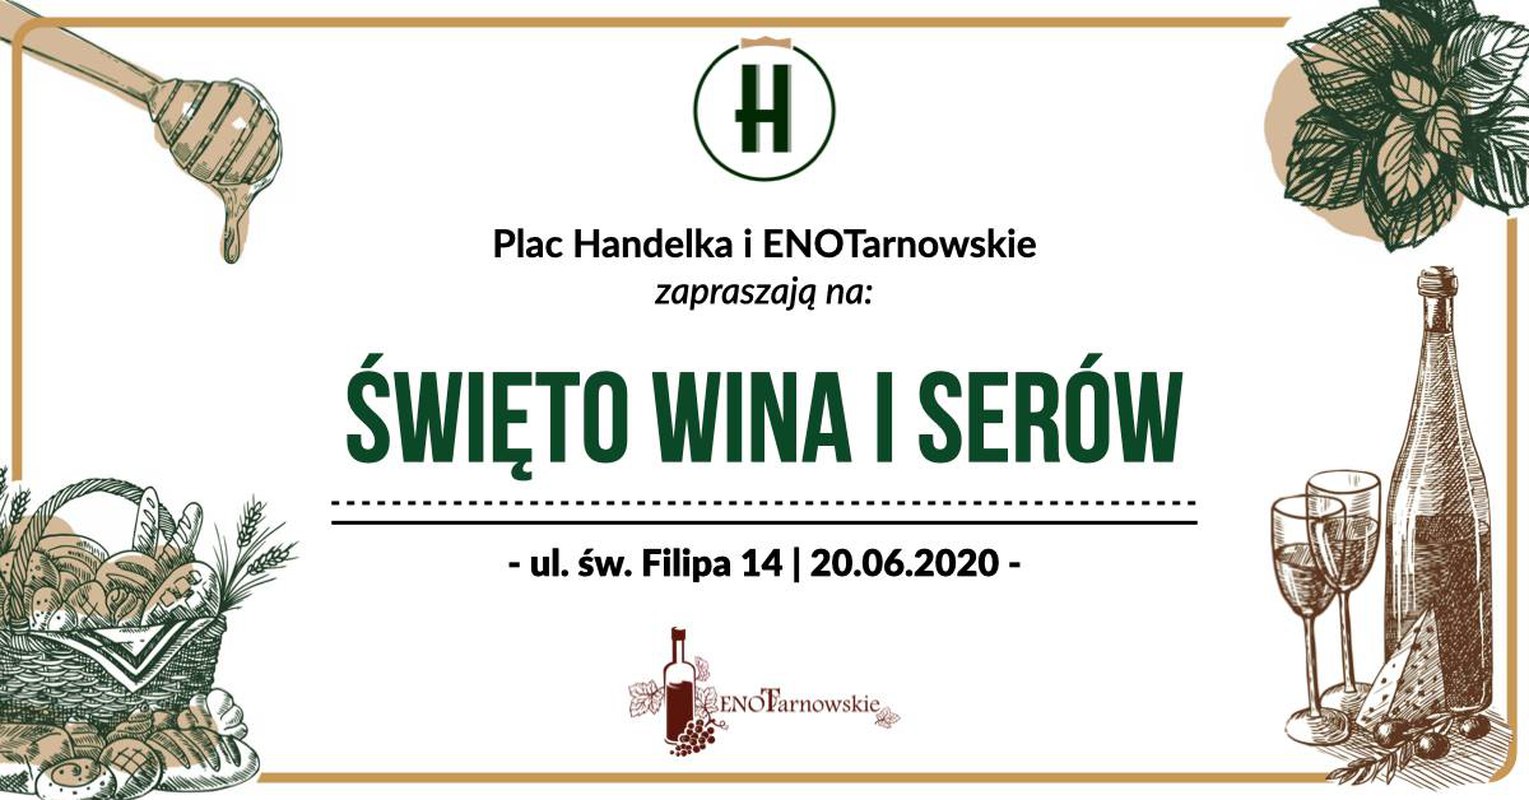 Plac Handelka: Święto Wina i Serów 20.06.2020